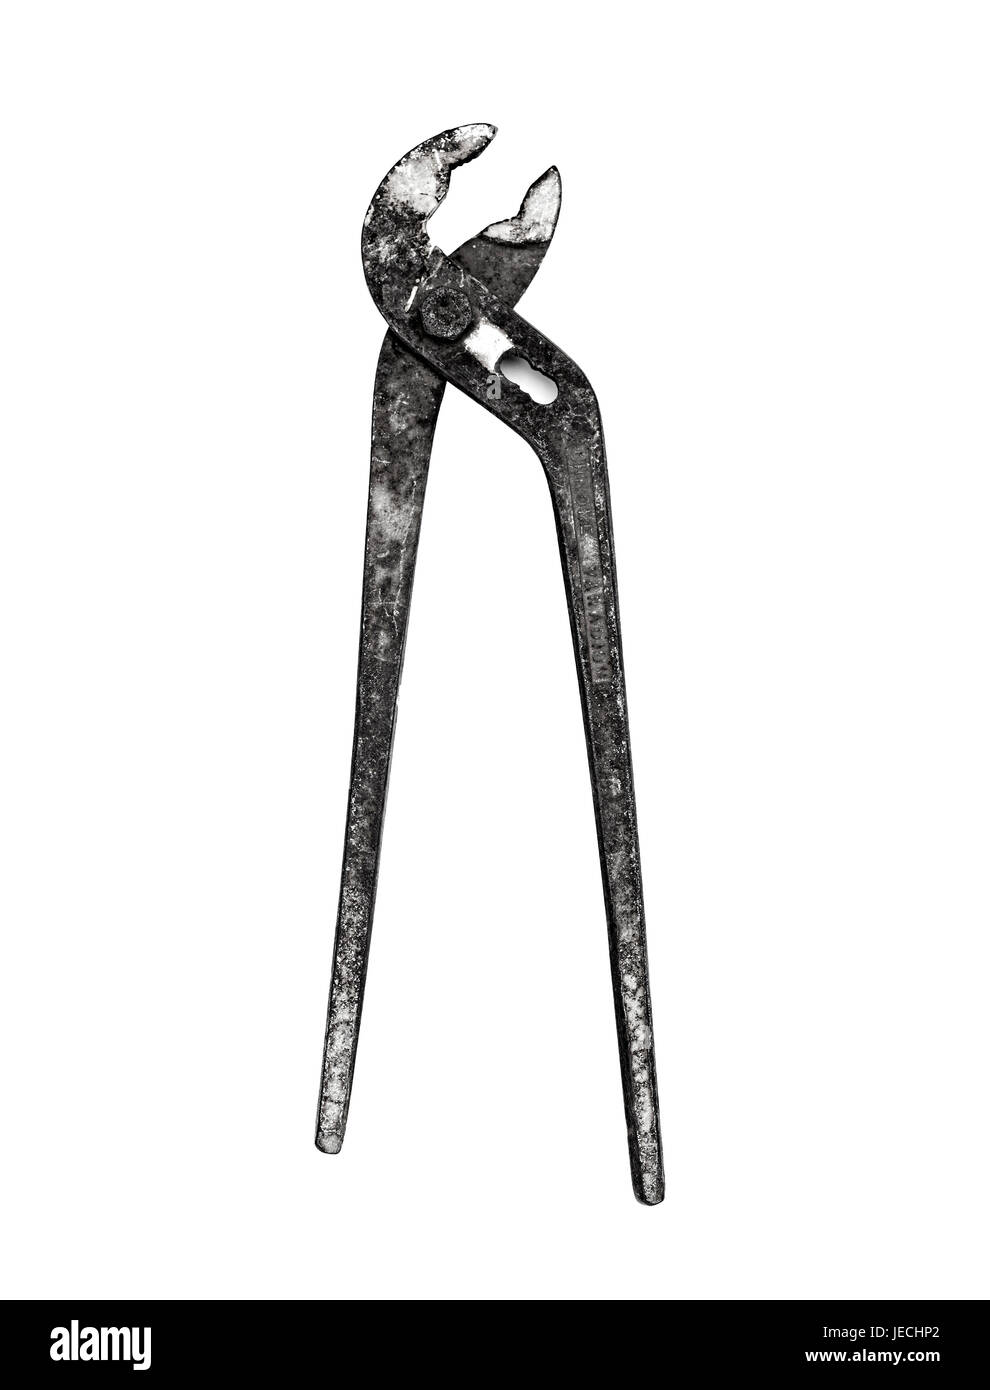 Le noir et blanc vintage clé dynamométrique avec poignée en bois Banque D'Images